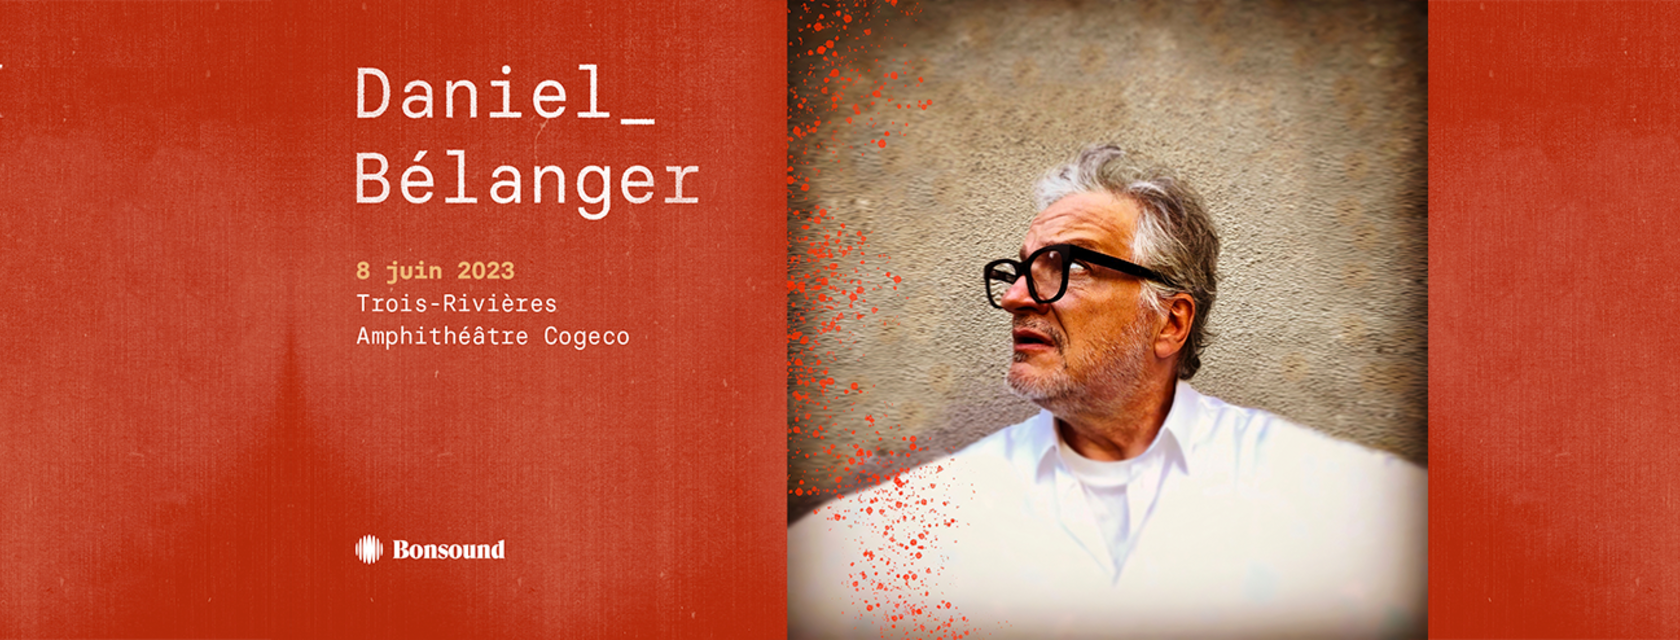 Daniel Bélanger arrêtera sa tournée à l’Amphithéâtre Cogeco cet été